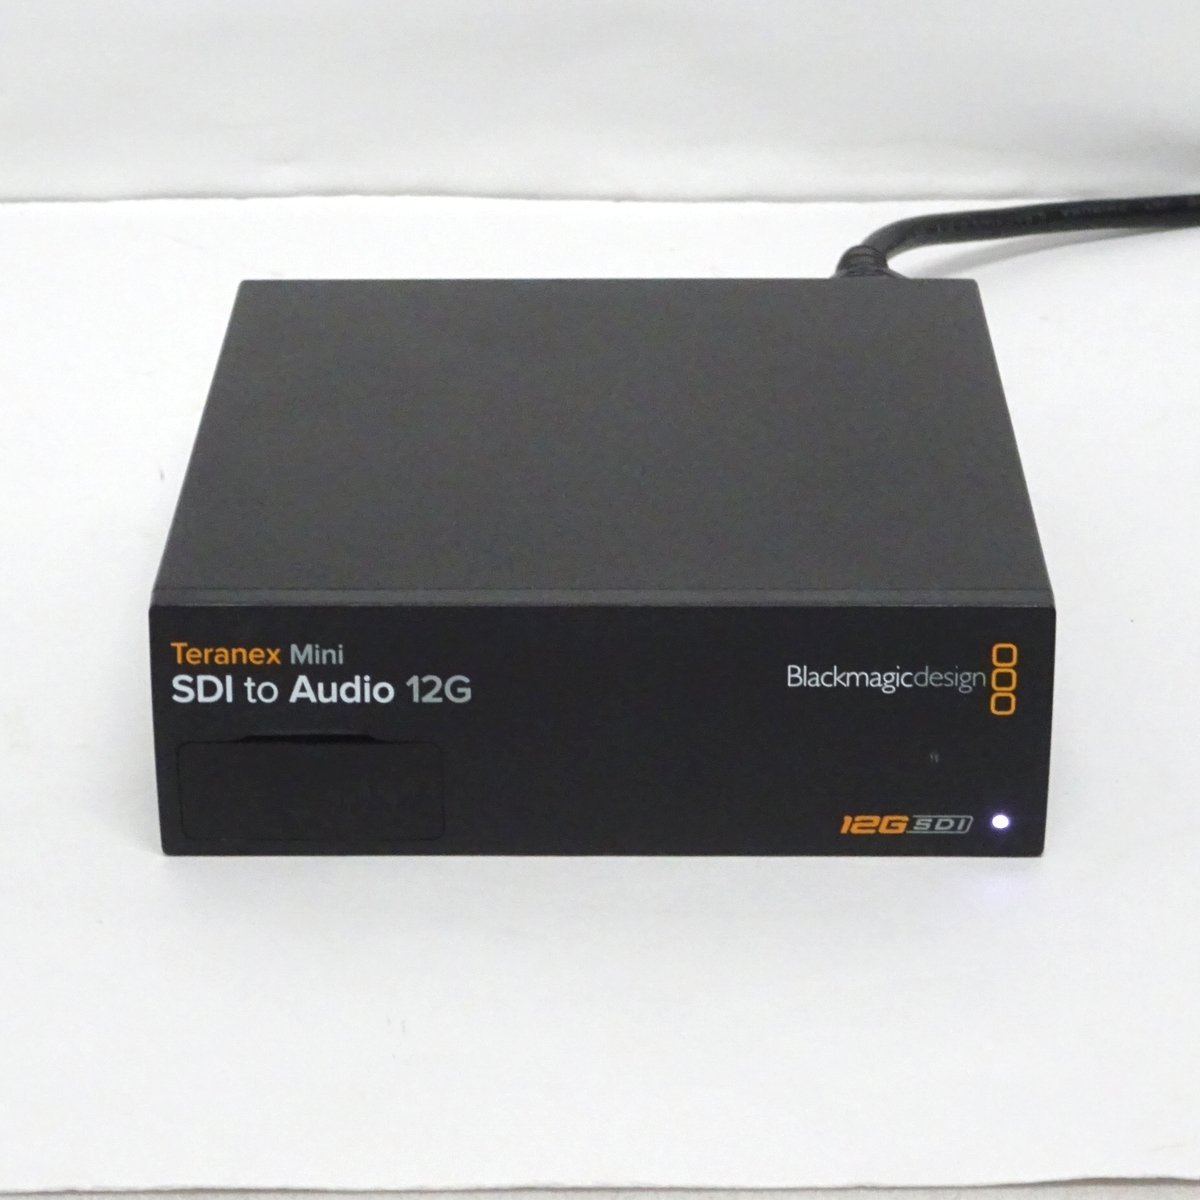 Blackmagic Design製 Teranex Mini SDI to Audio 12G コンバーター